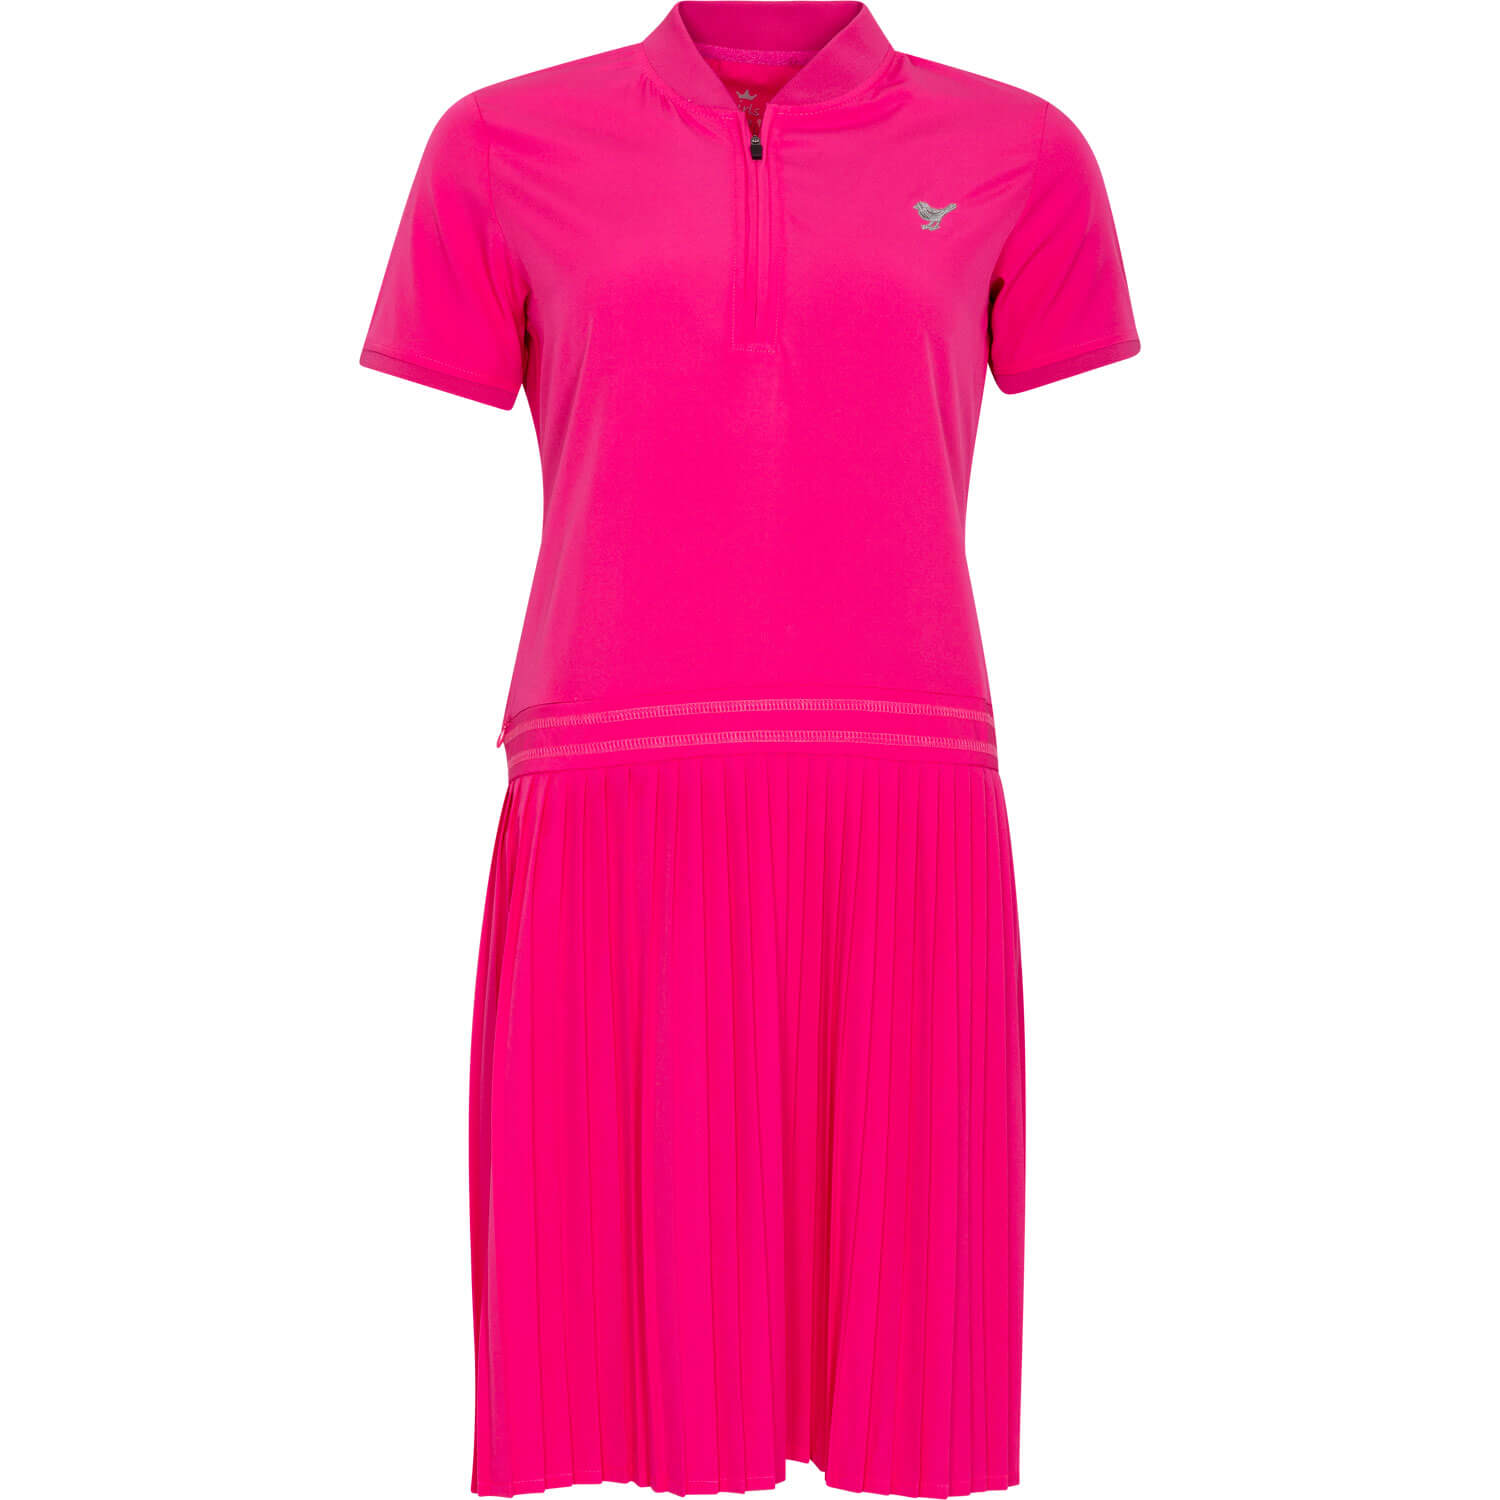 Girls Golf Polo Dress Pink